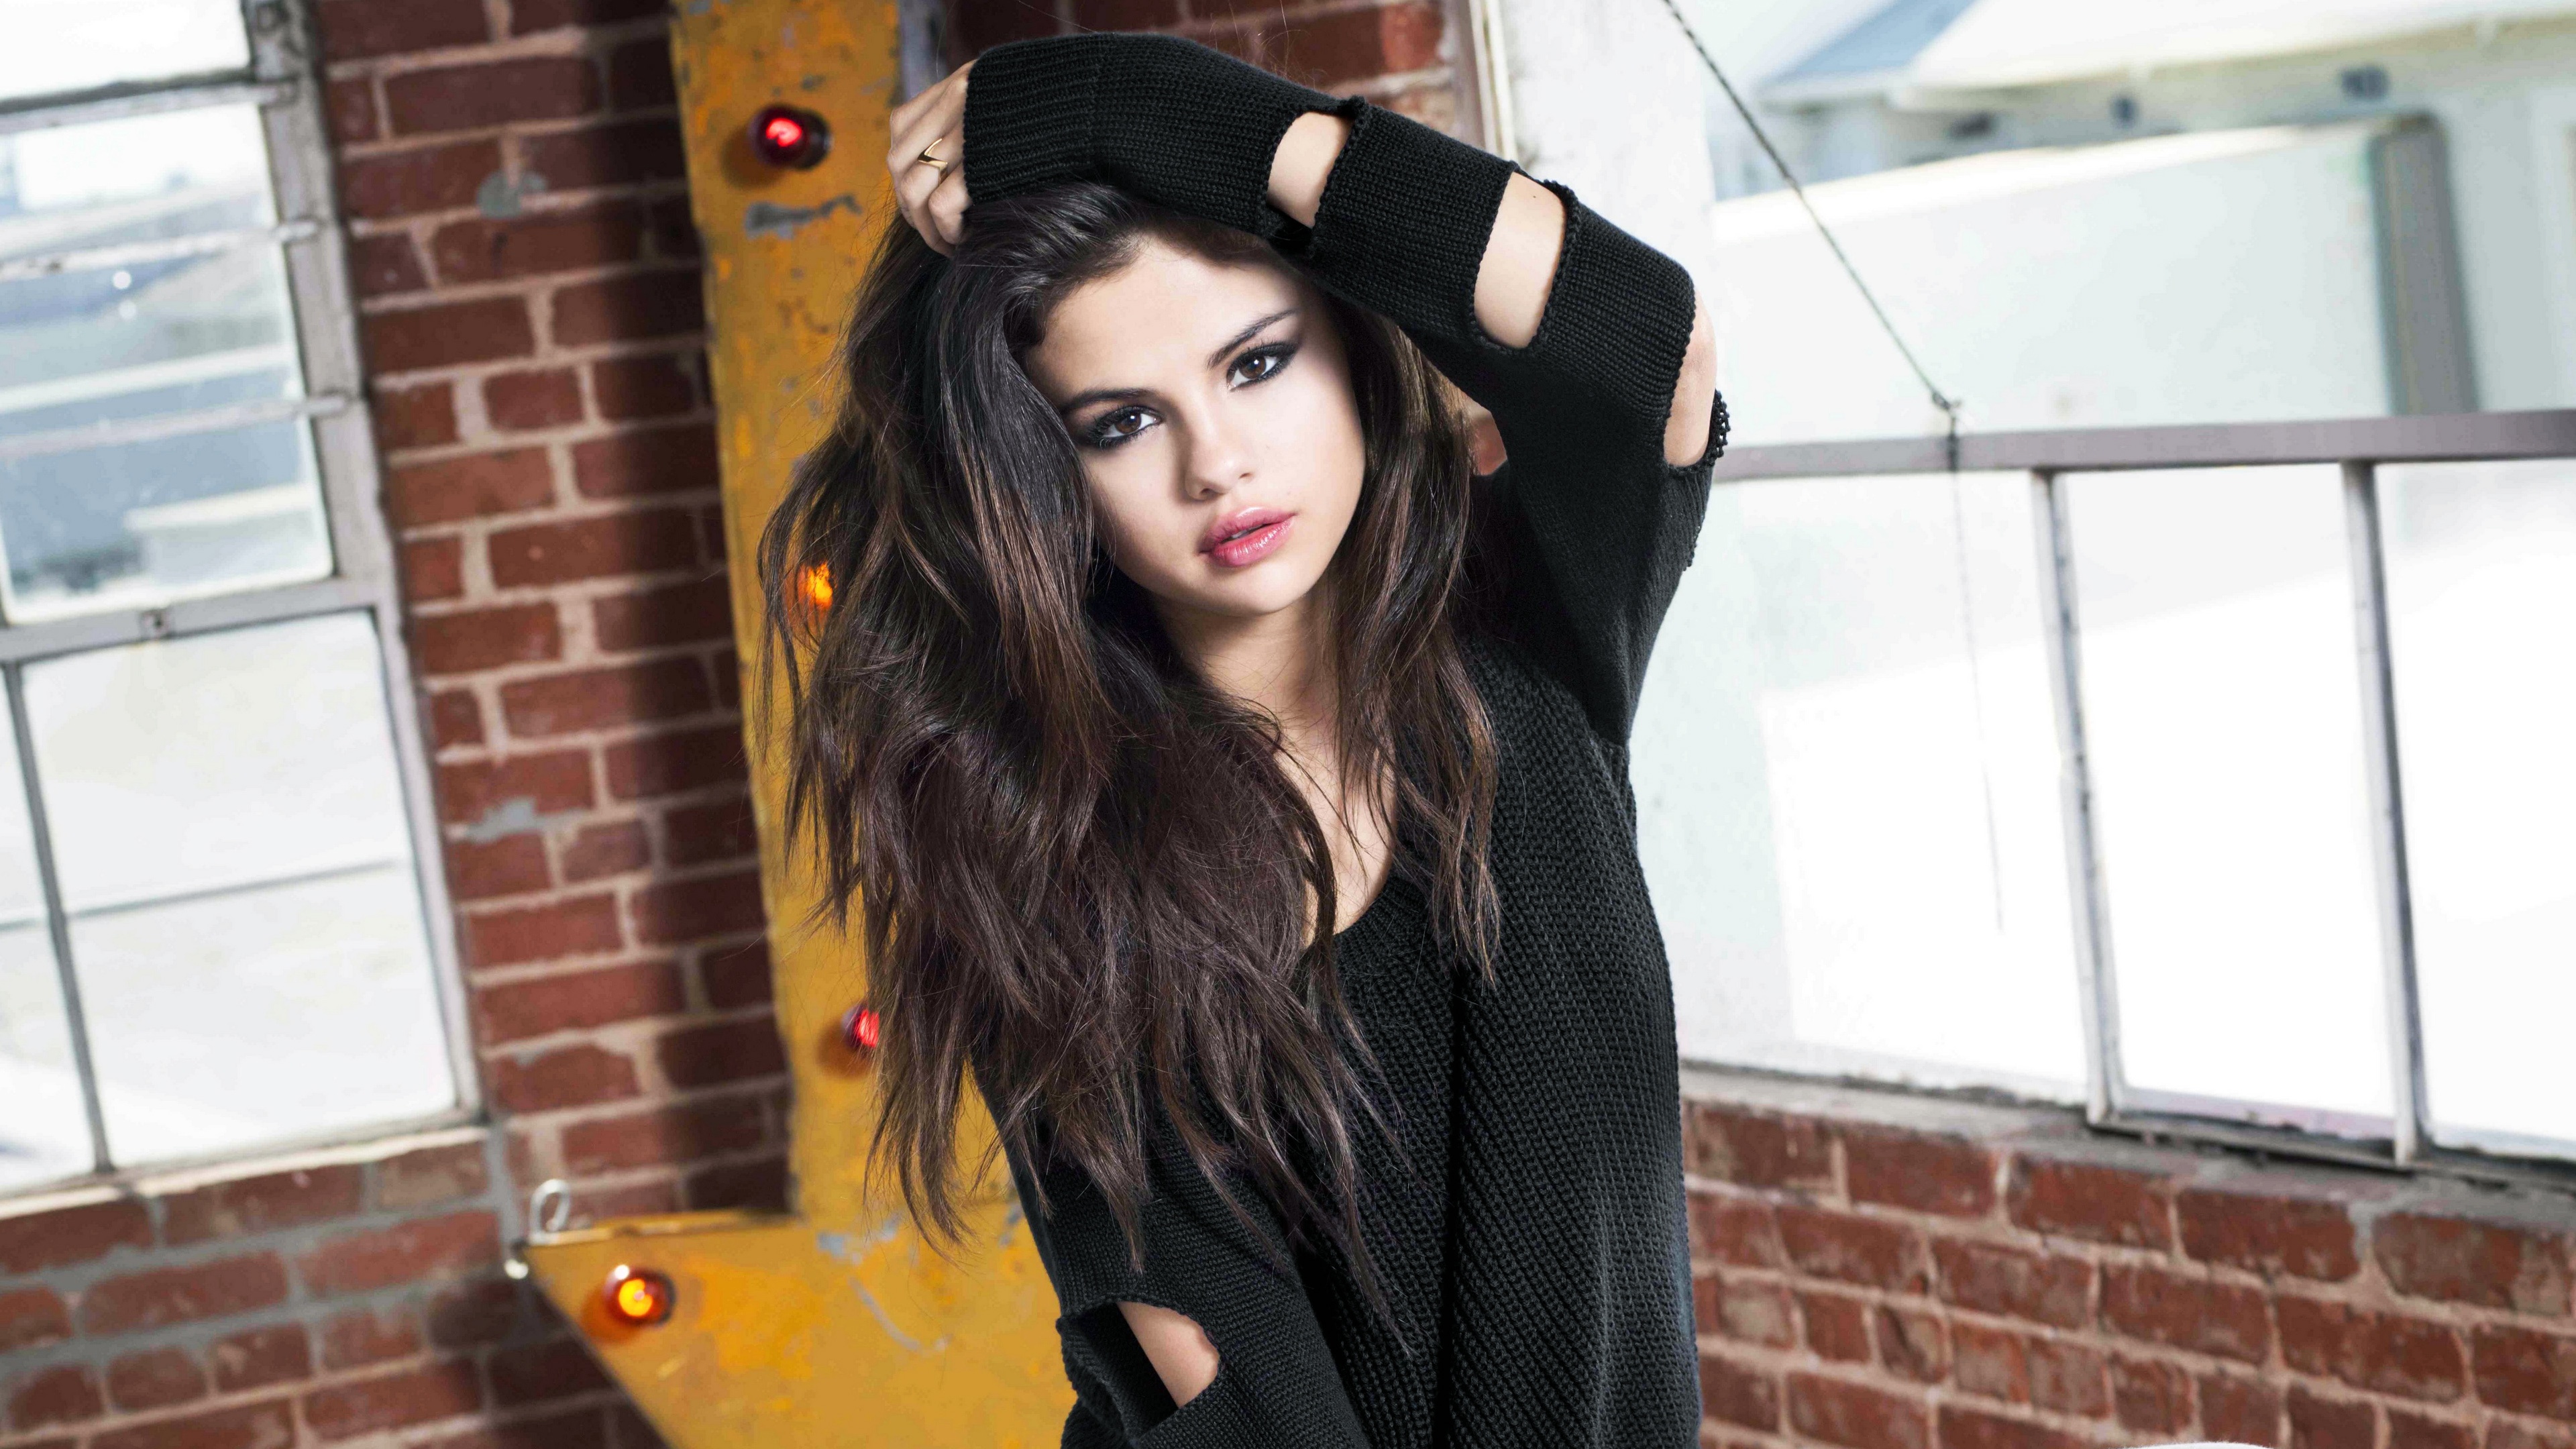  Selena Gomez 4K Wallpaper on